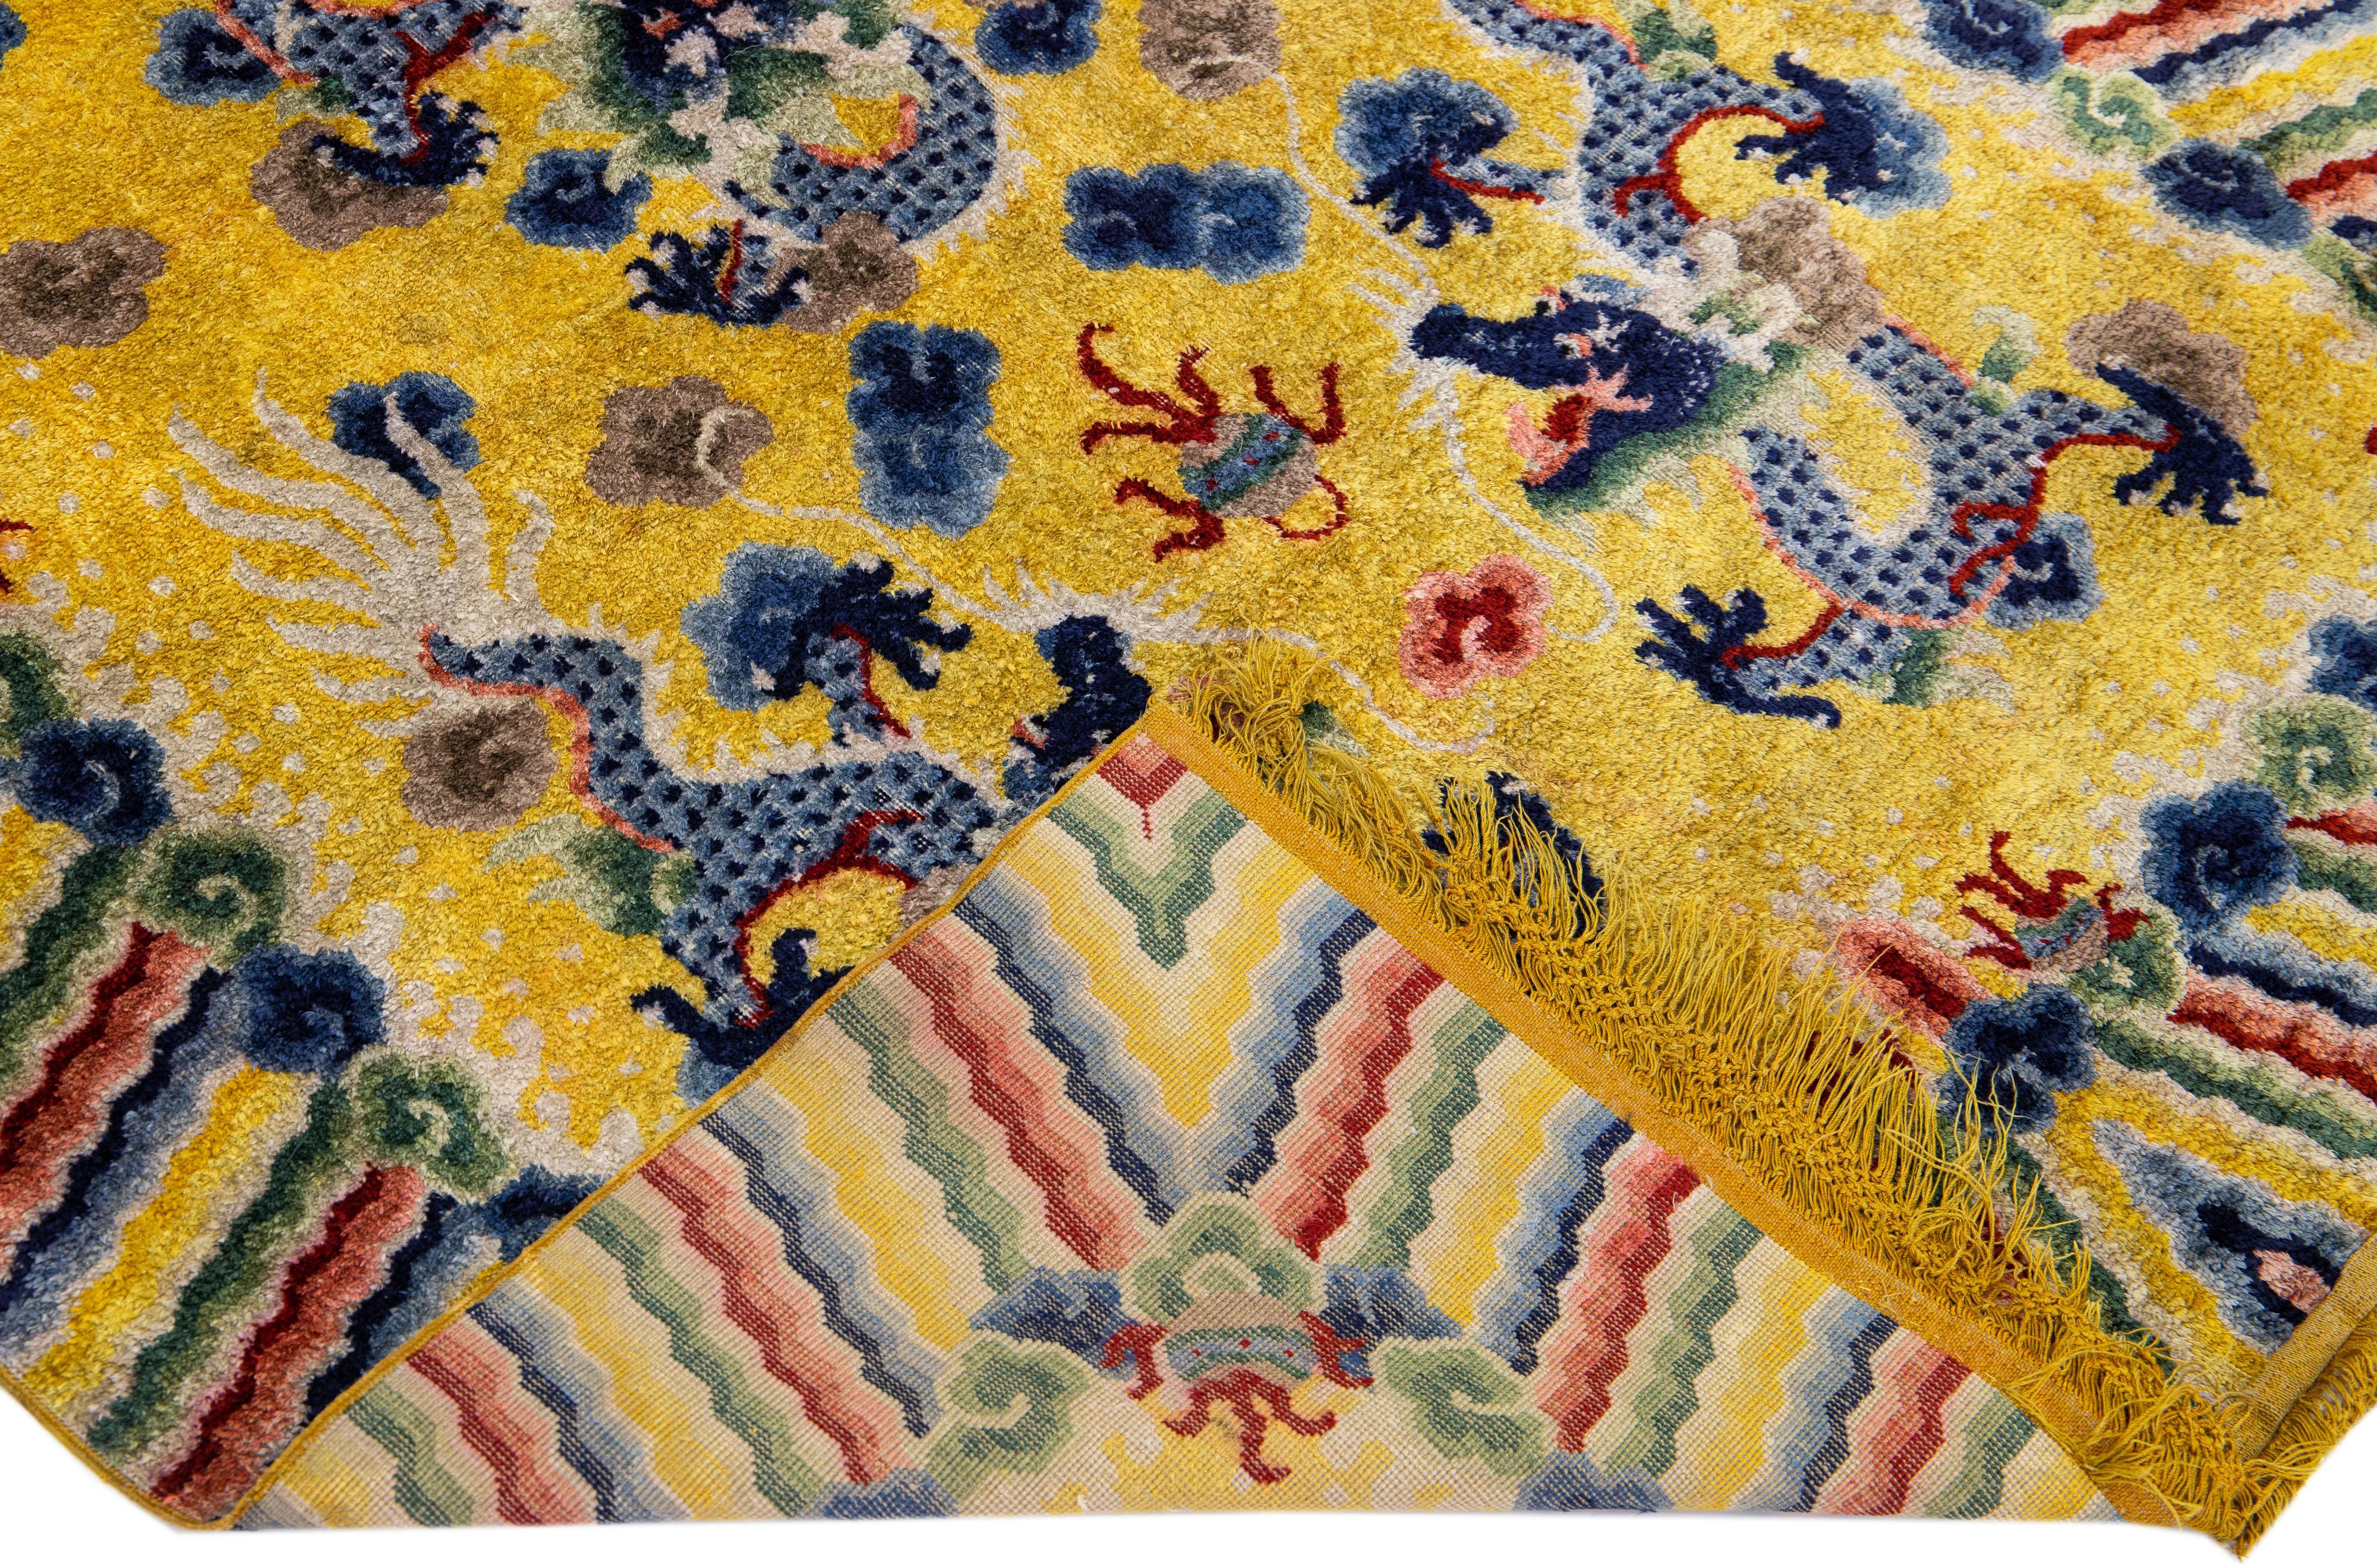 Magnifique tapis chinois en soie noué à la main, datant du début ou du milieu du XXe siècle, avec un champ jaune et des accents multicolores sur l'ensemble du motif traditionnel du dragon chinois. 

Ce tapis mesure 4' x 6'2